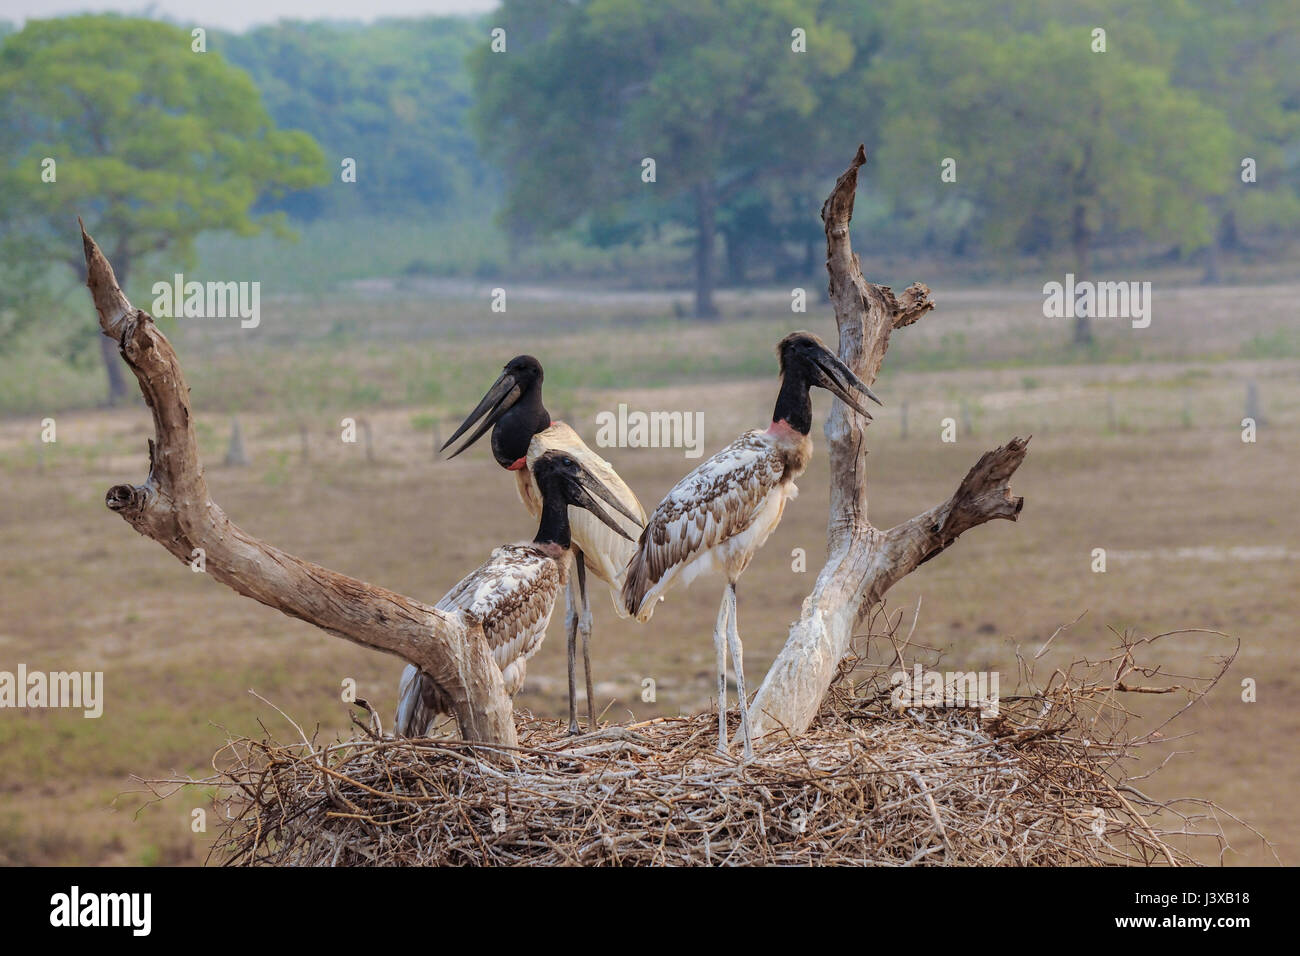 Ein Erwachsener und zwei jungen Jabiru Störche in ihrem Nest, Pantanal, Brasilien Stockfoto